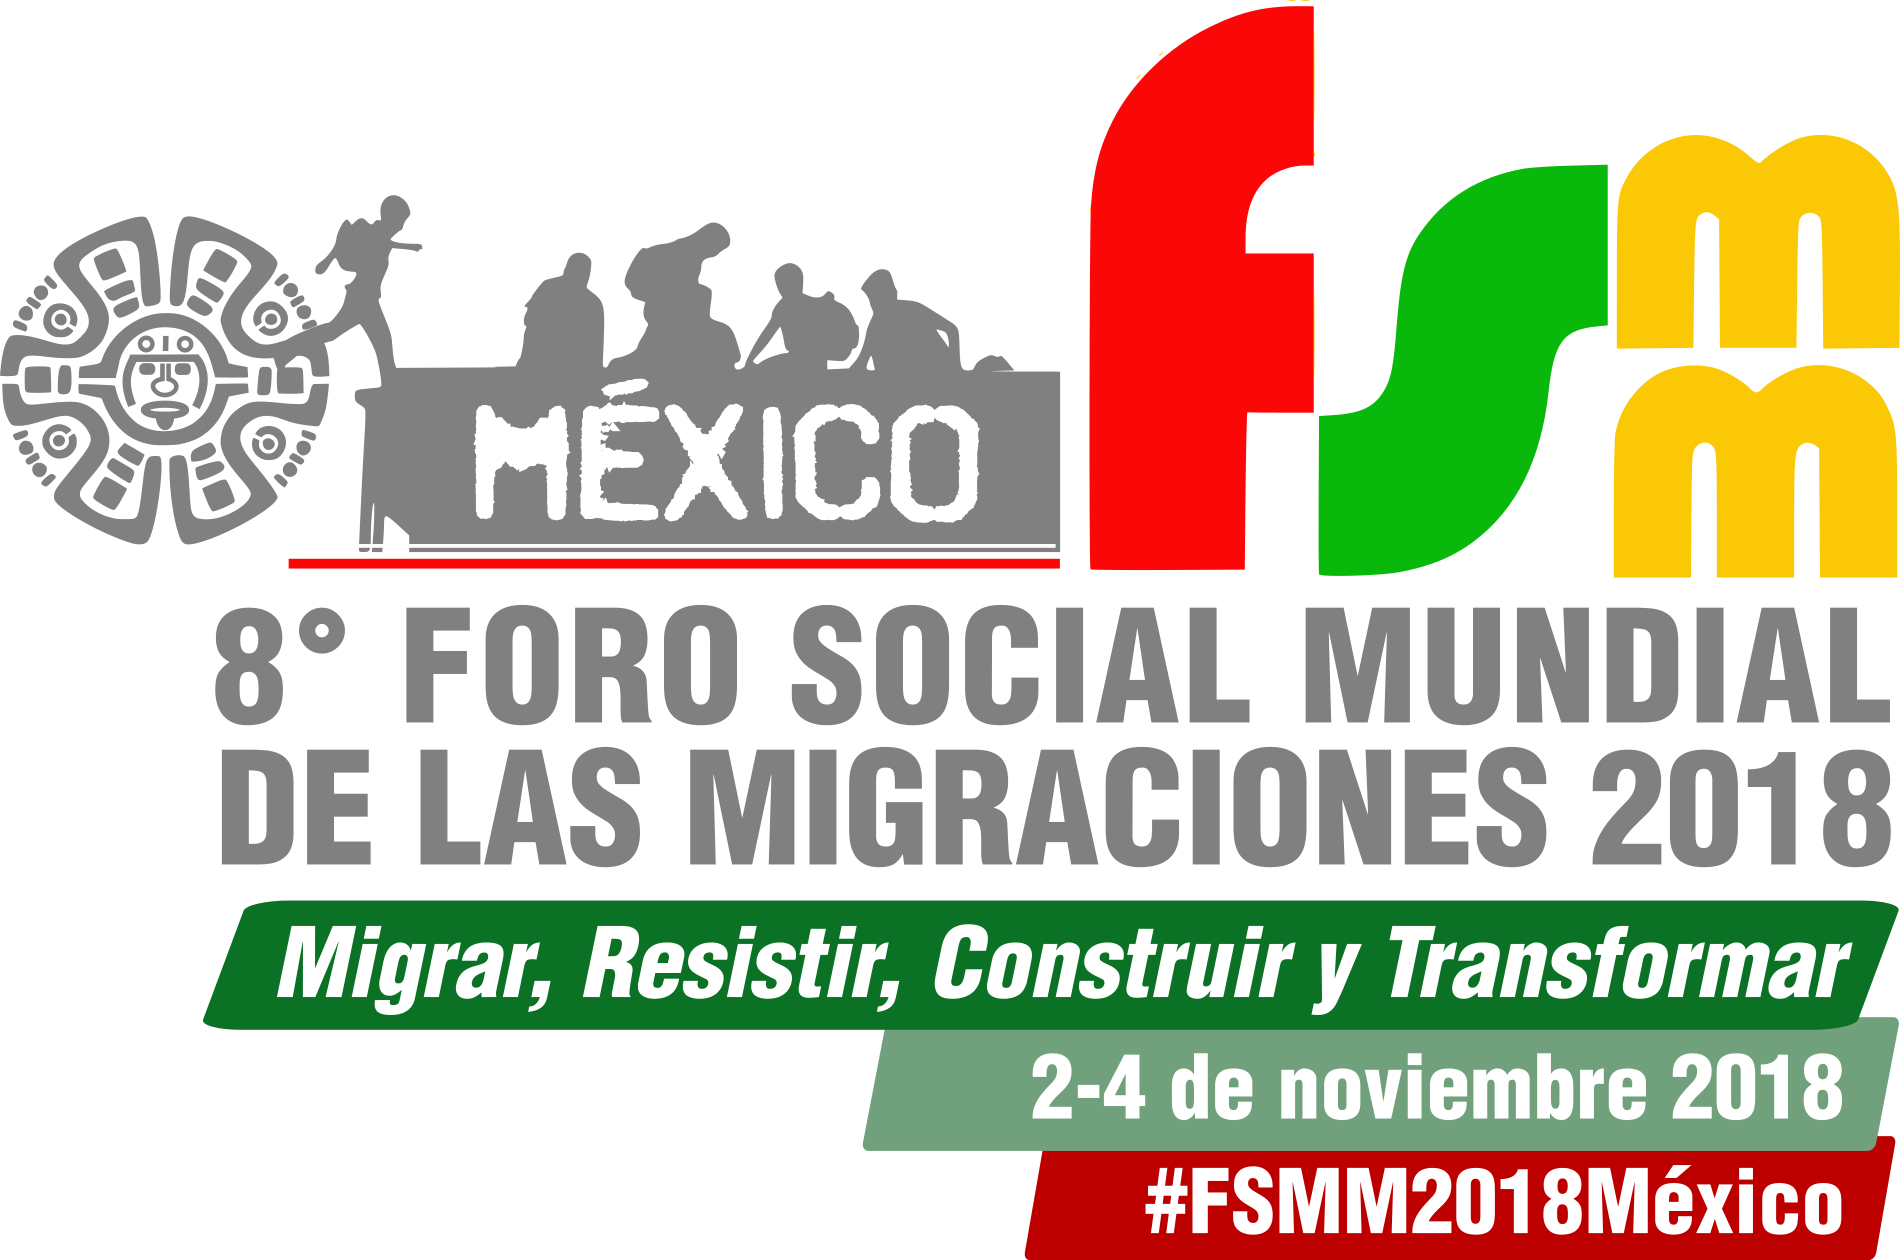 Se anuncia el VIII Foro Social Mundial de las Migraciones en México como respuesta a la actual crisis humanitaria de Migrantes y Refugiados a Nivel Global